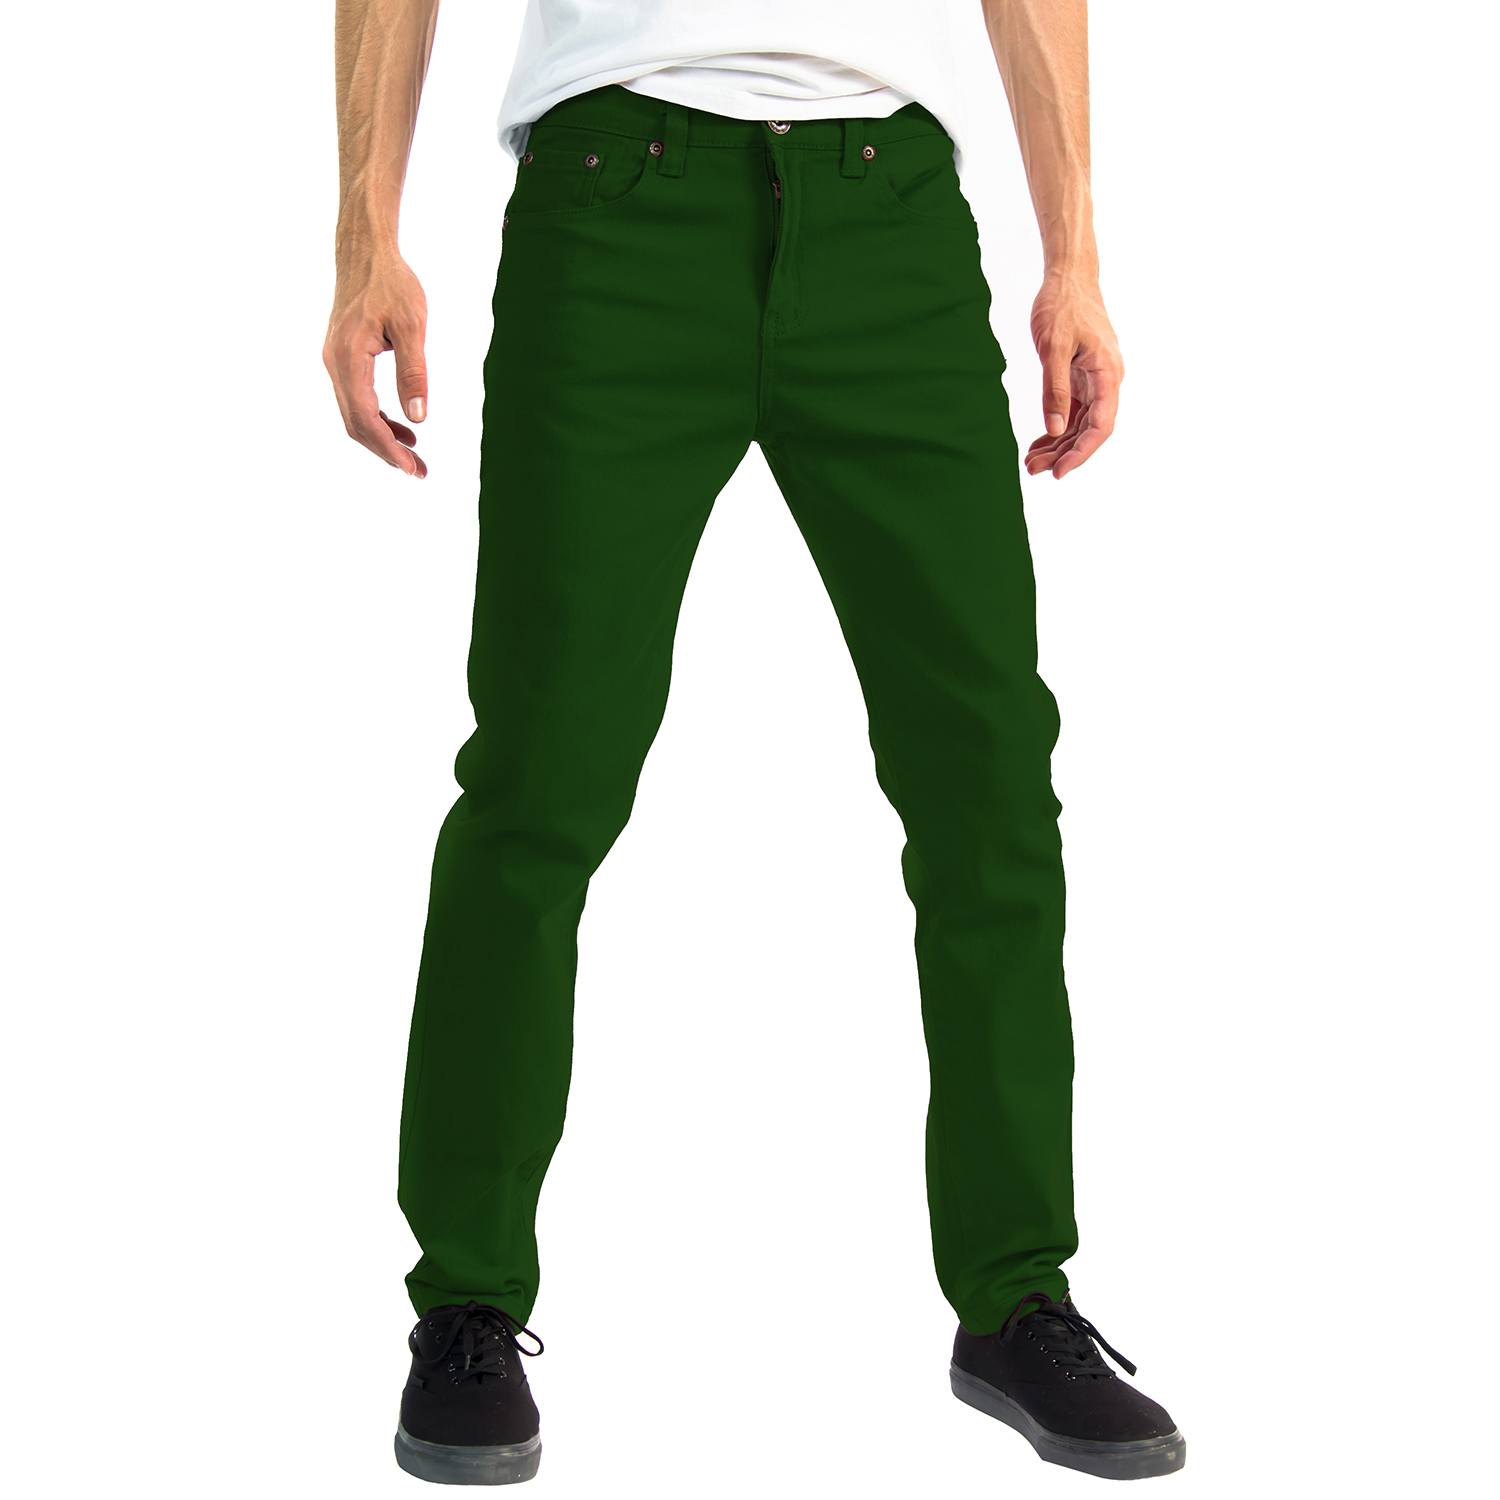 Alta Designer Fashion Mens Slim Fit Skinny Denim Jeans - Green - Size 30 - image 1 of 3